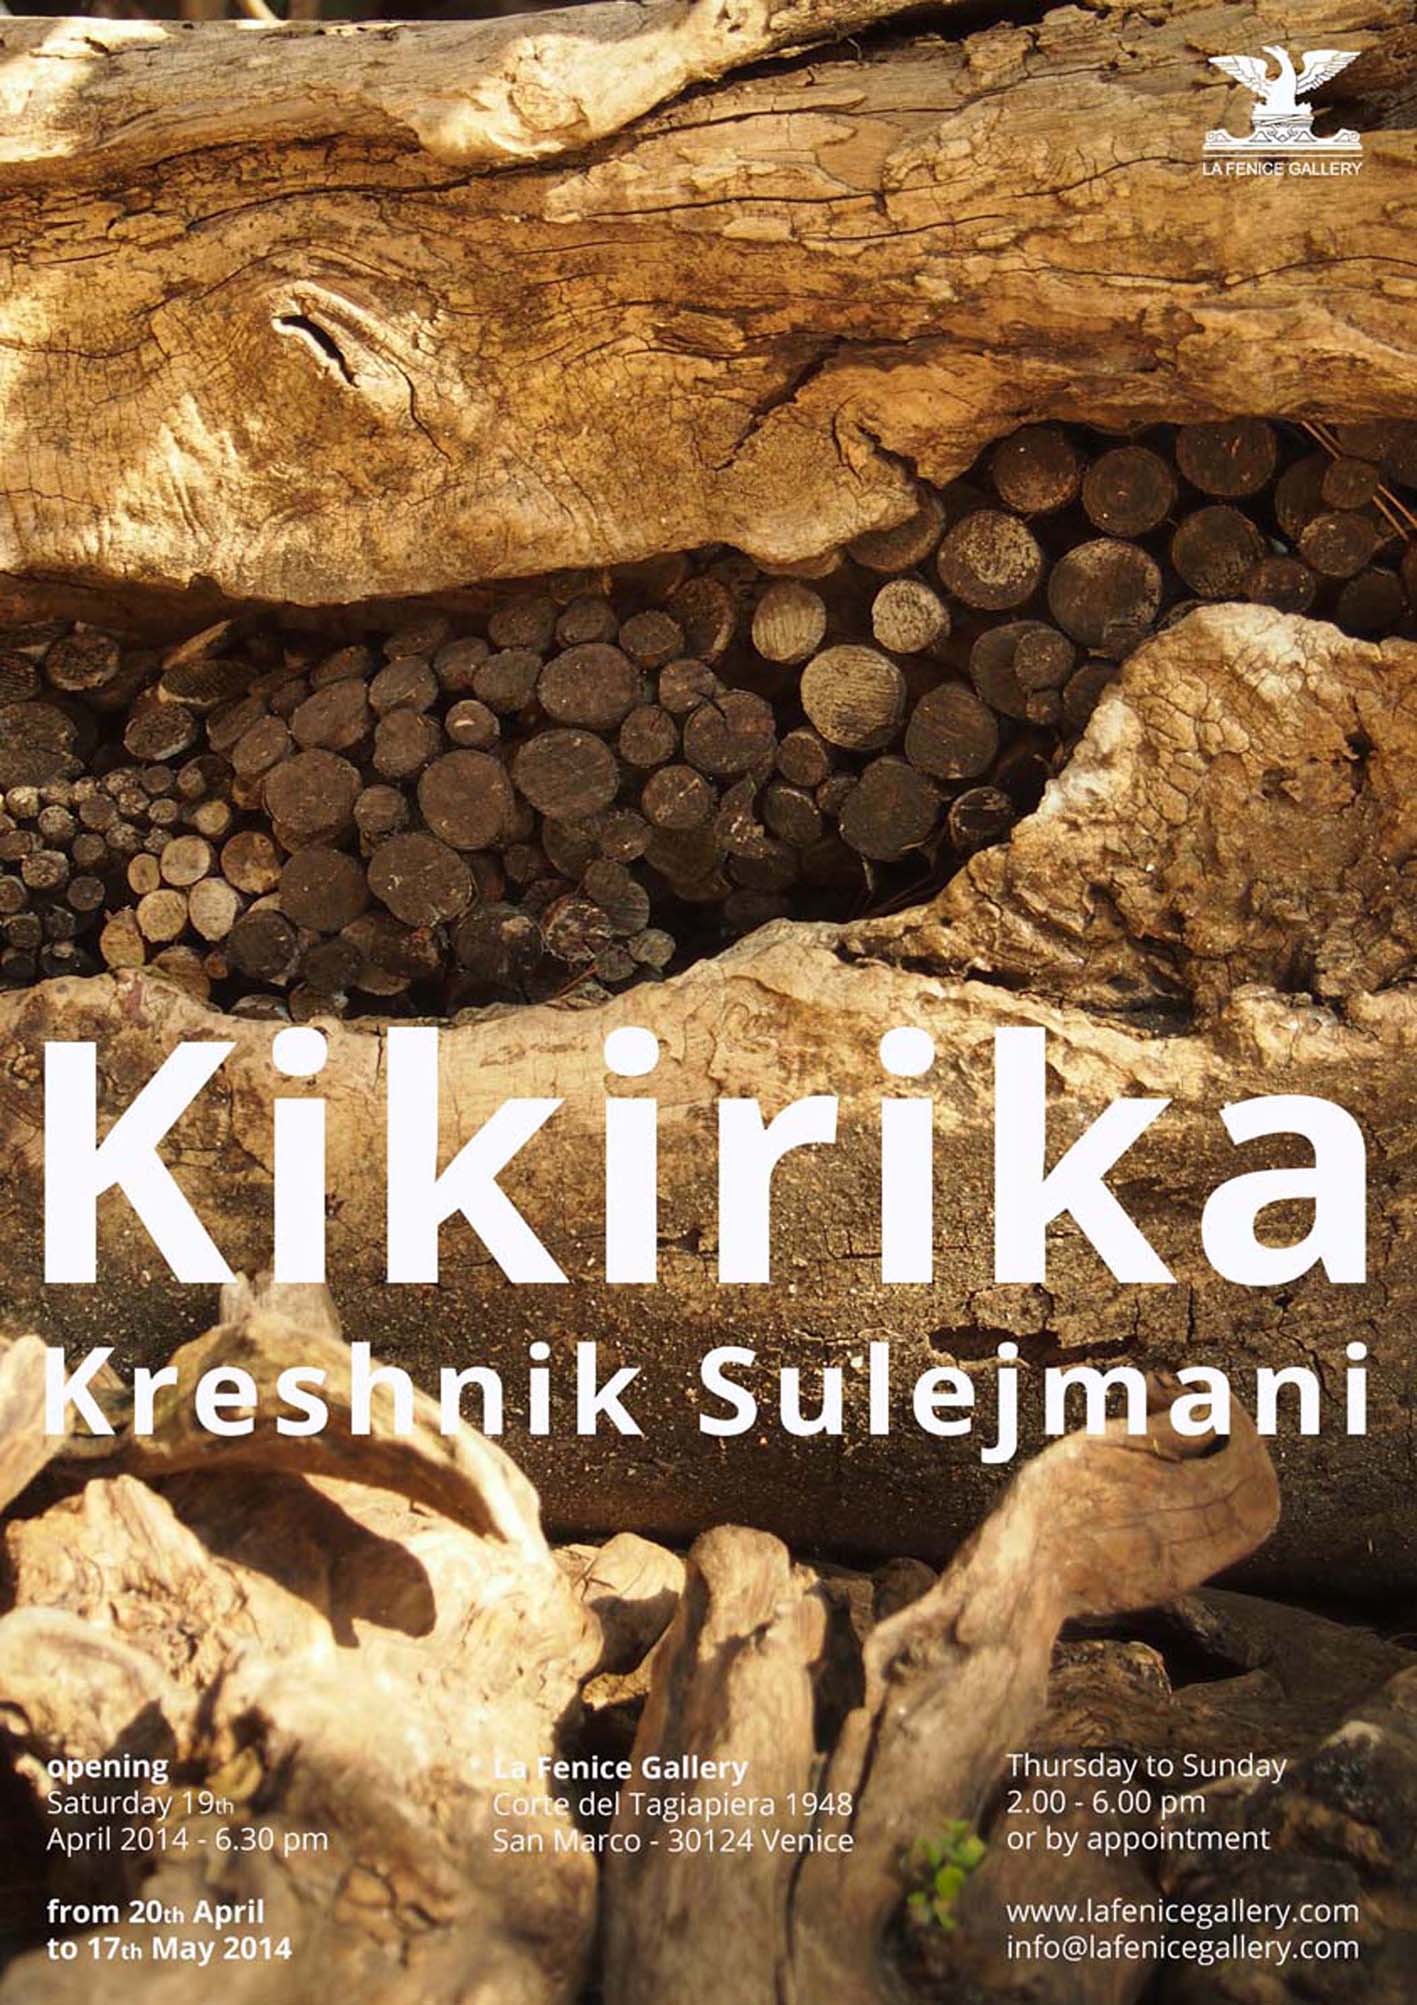 Kreshnik Sulejmani – Kikirika